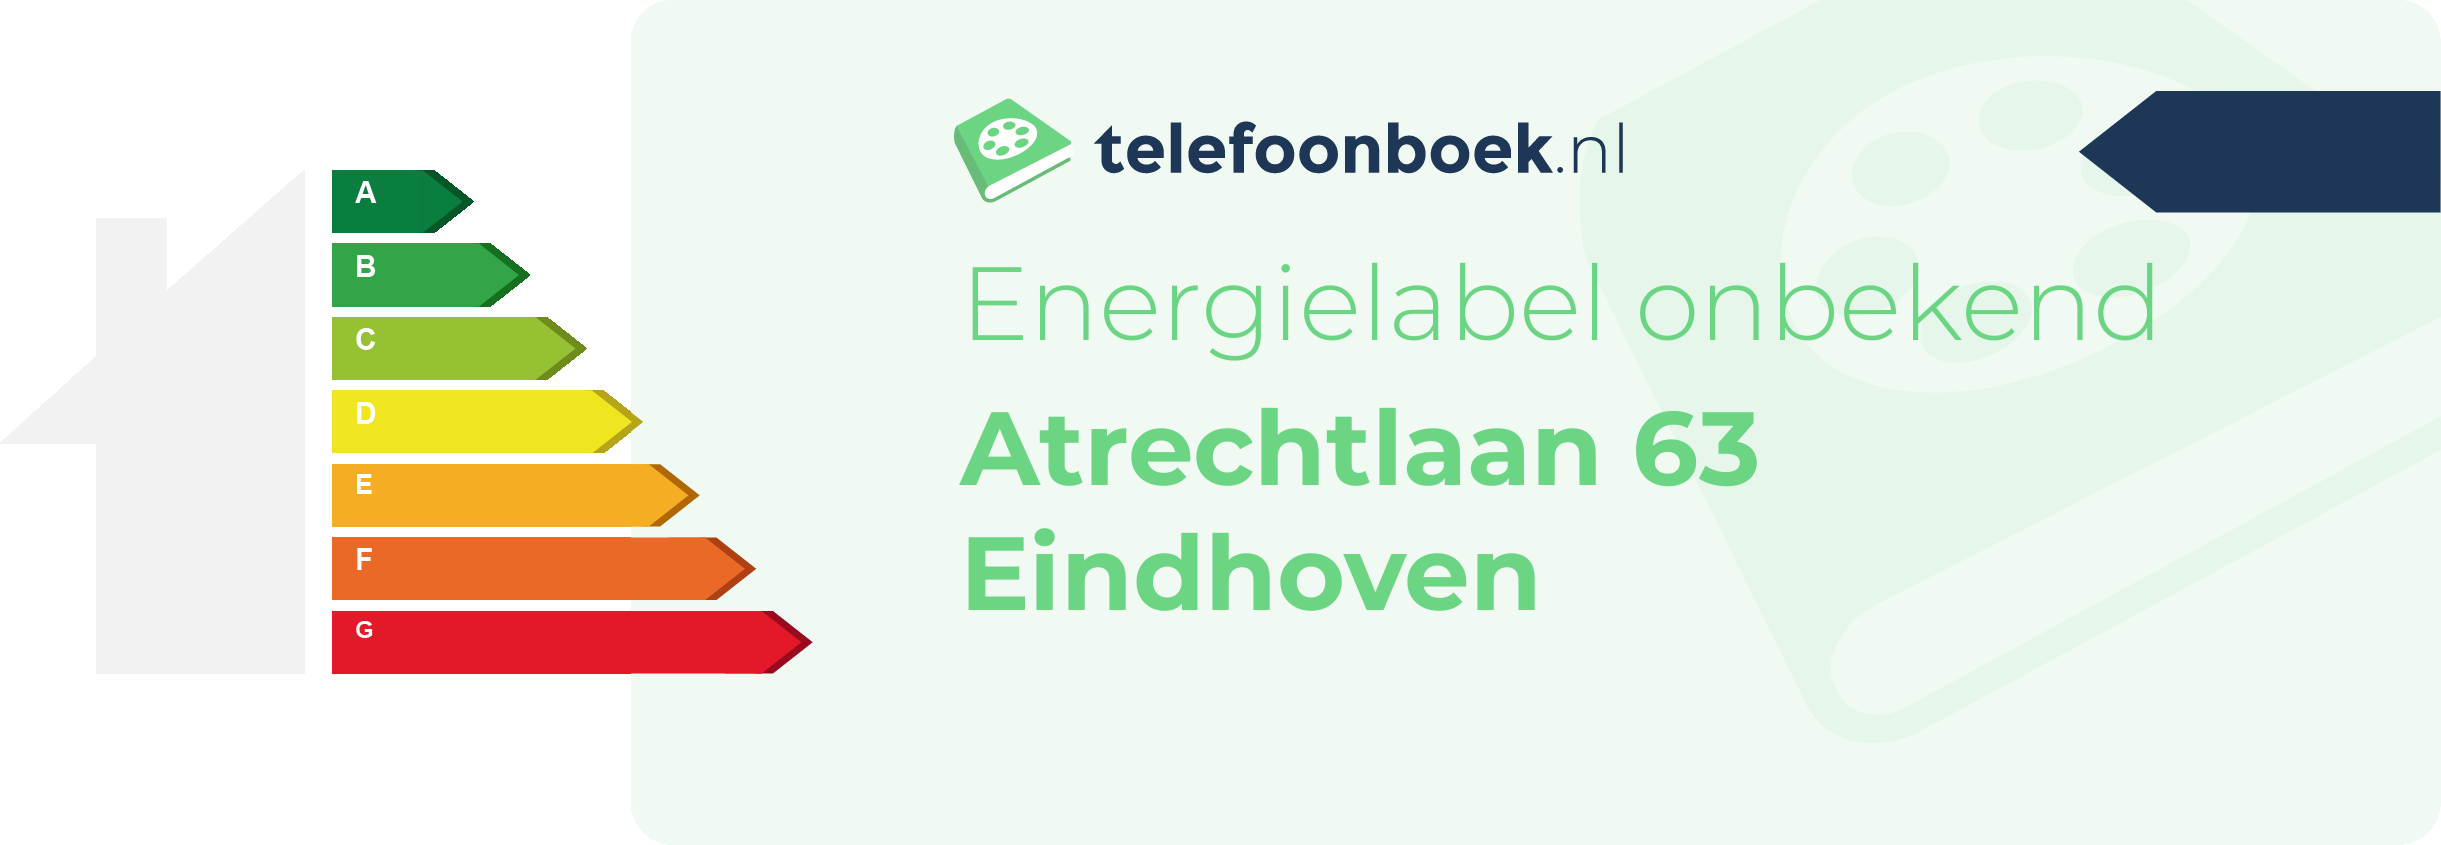 Energielabel Atrechtlaan 63 Eindhoven